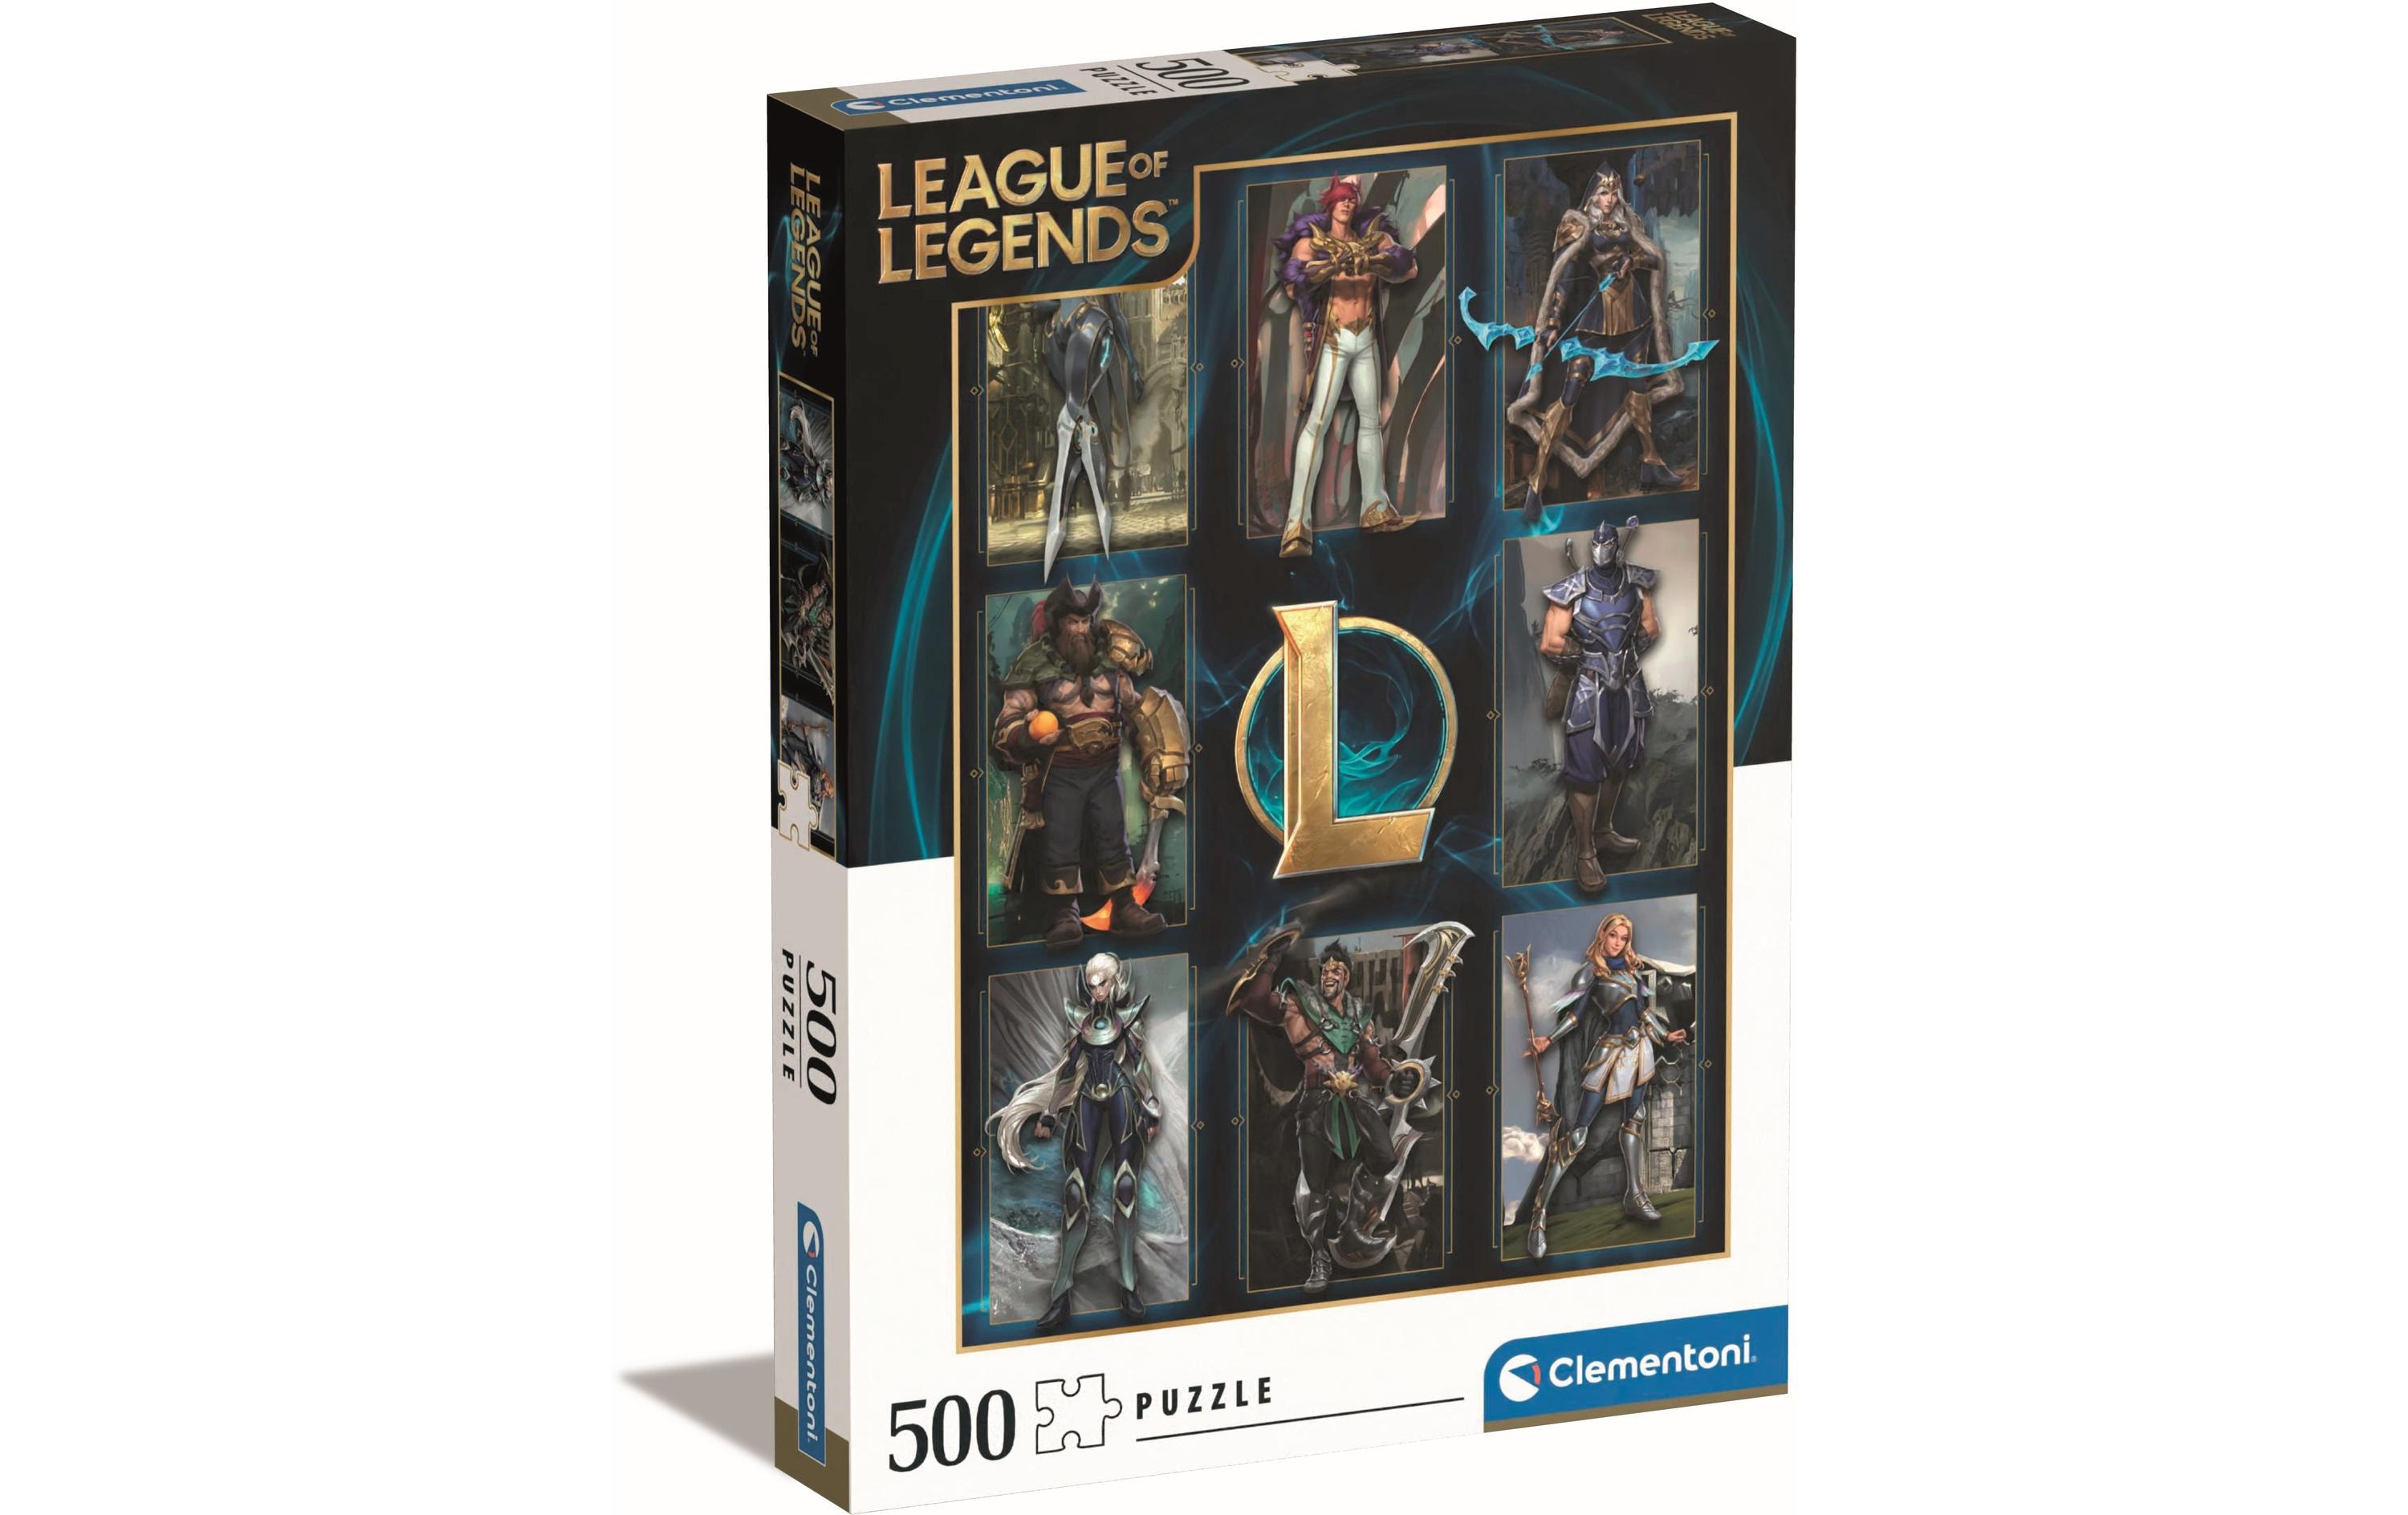 Clementoni Puzzle League of Legends